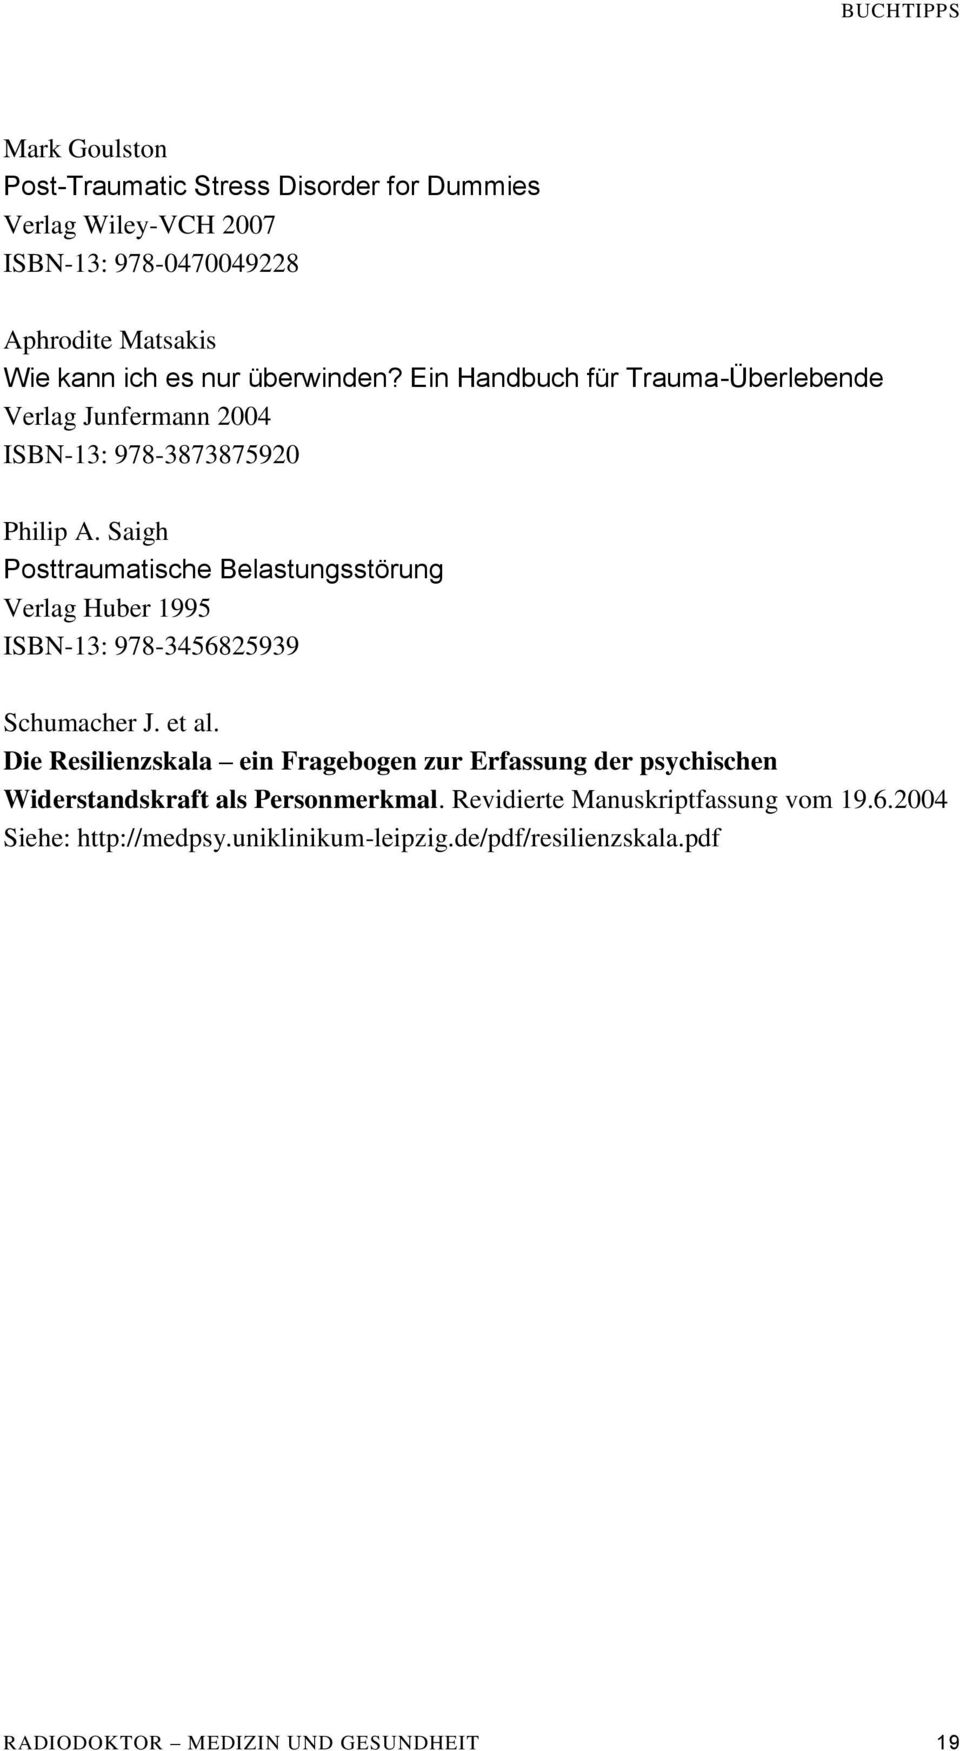 Saigh Posttraumatische Belastungsstörung Verlag Huber 1995 ISBN-13: 978-3456825939 Schumacher J. et al.